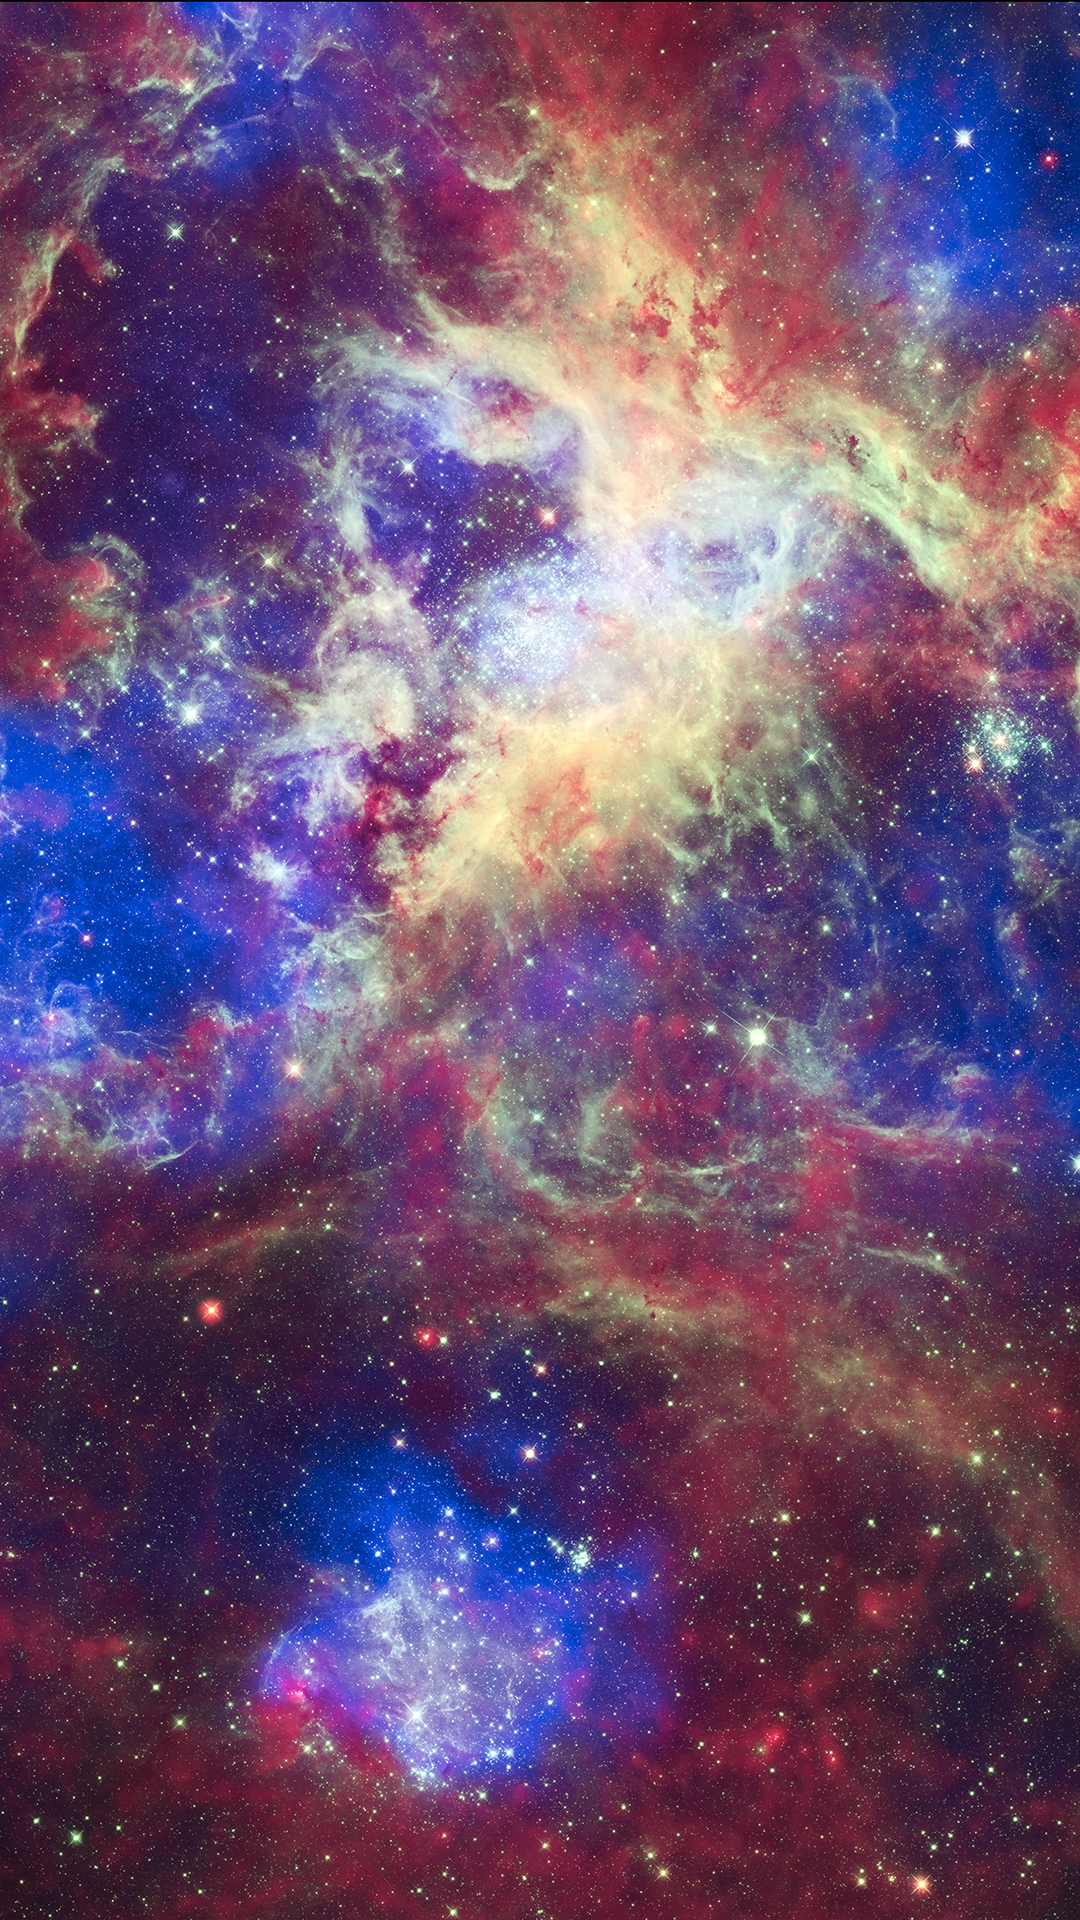 Tarantula Nebula, 30 Doradus